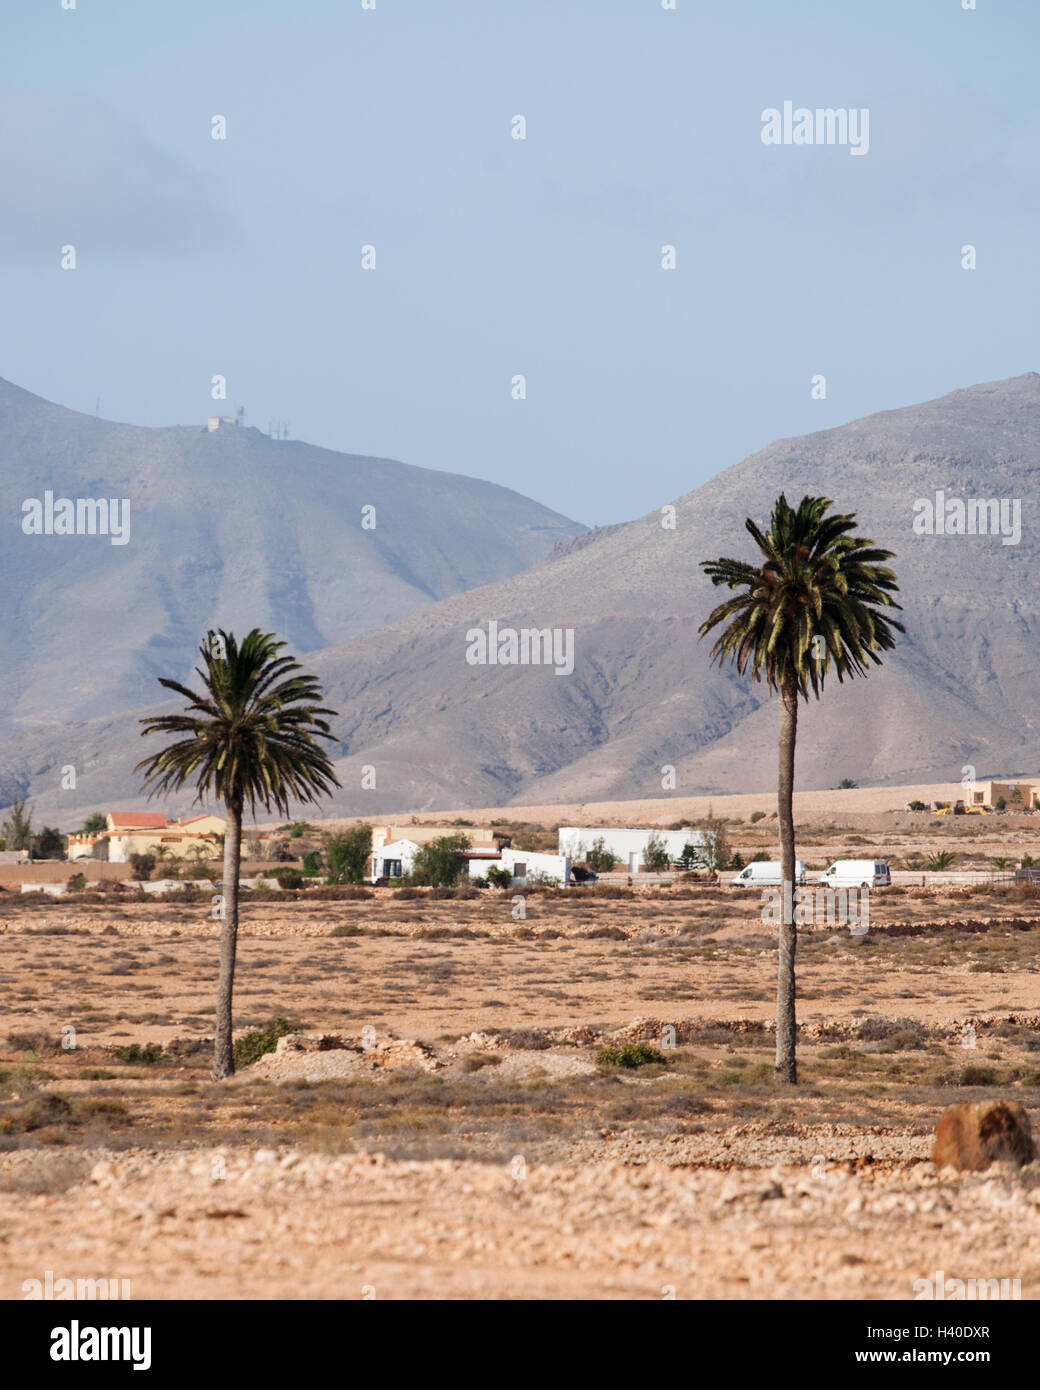 Fuerteventura, Îles Canaries, Afrique du Nord, Espagne : la conduite sur la route, vue de paysage désertique avec des palmiers, des maisons blanches et des montagnes Banque D'Images